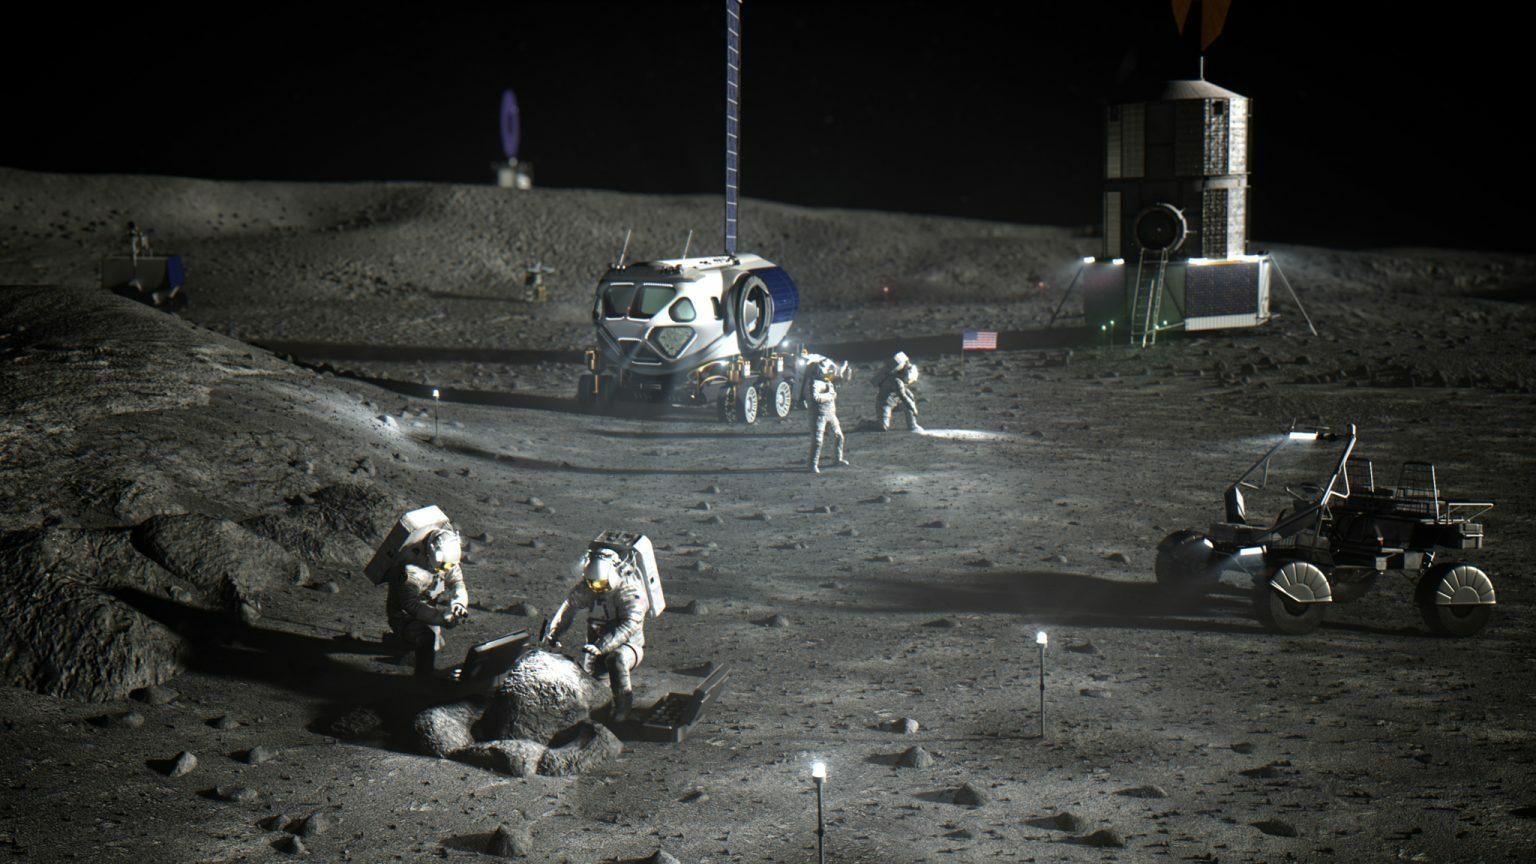 Kunstniku visioon planeeritavast Kuu uurimisjaamast tulevikus. 